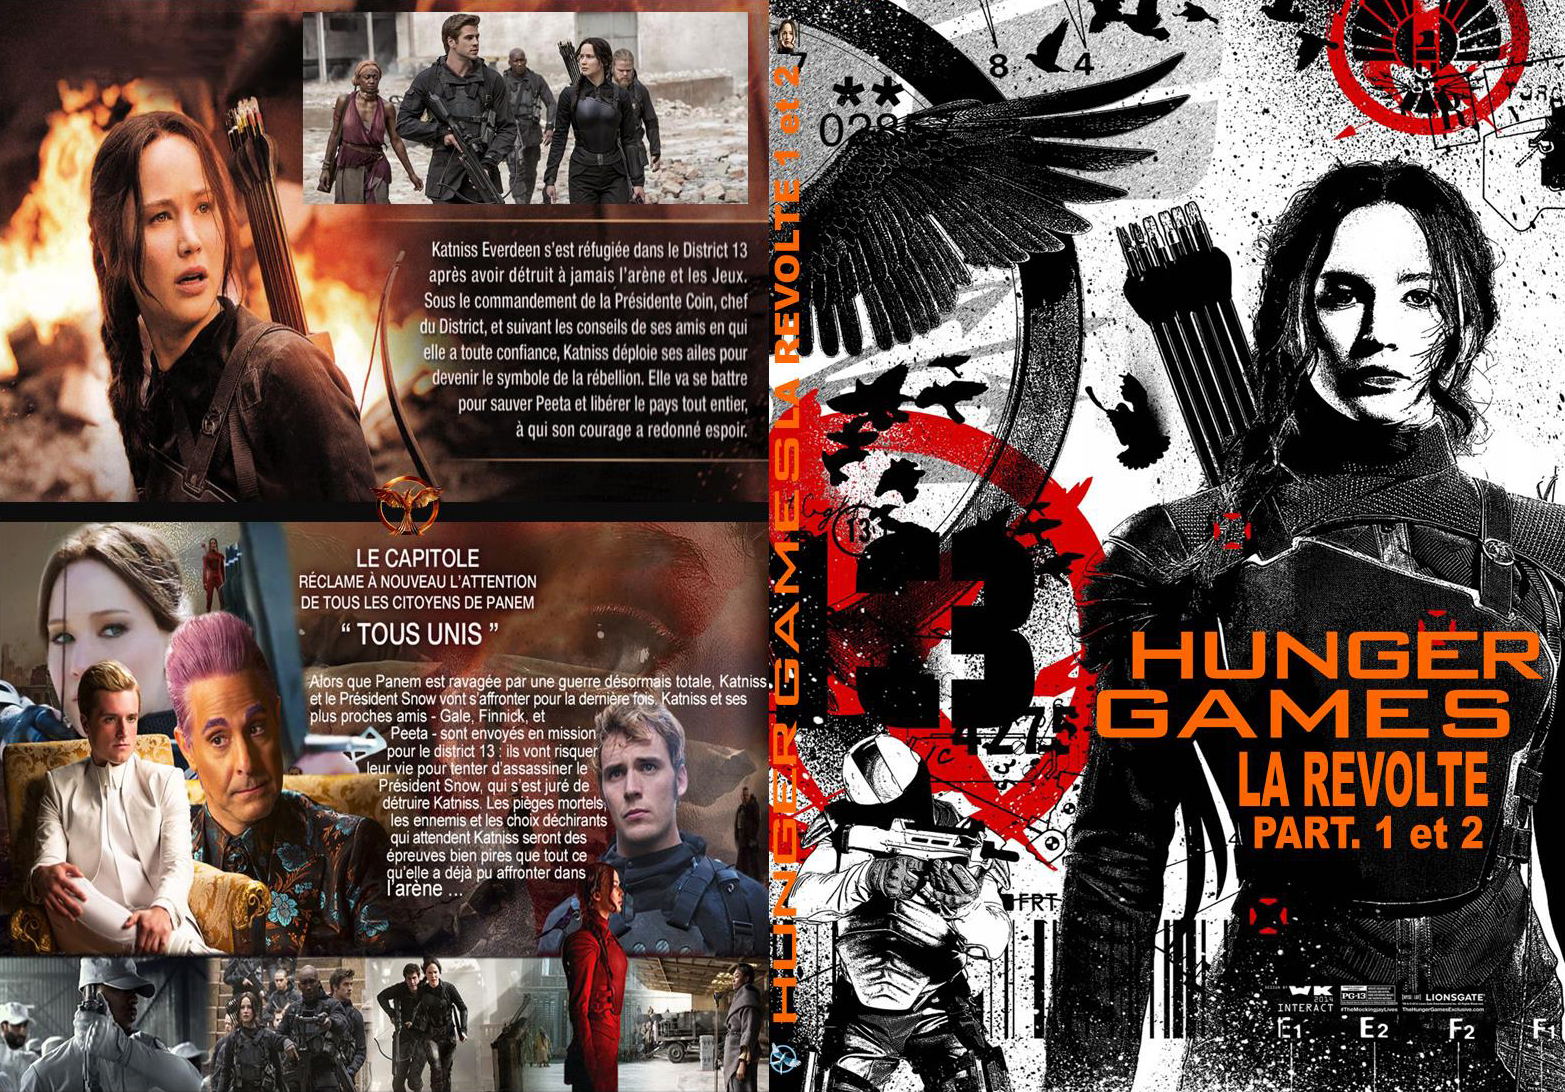 Jaquette DVD Hunger Games La Rvolte part 1et2 custom